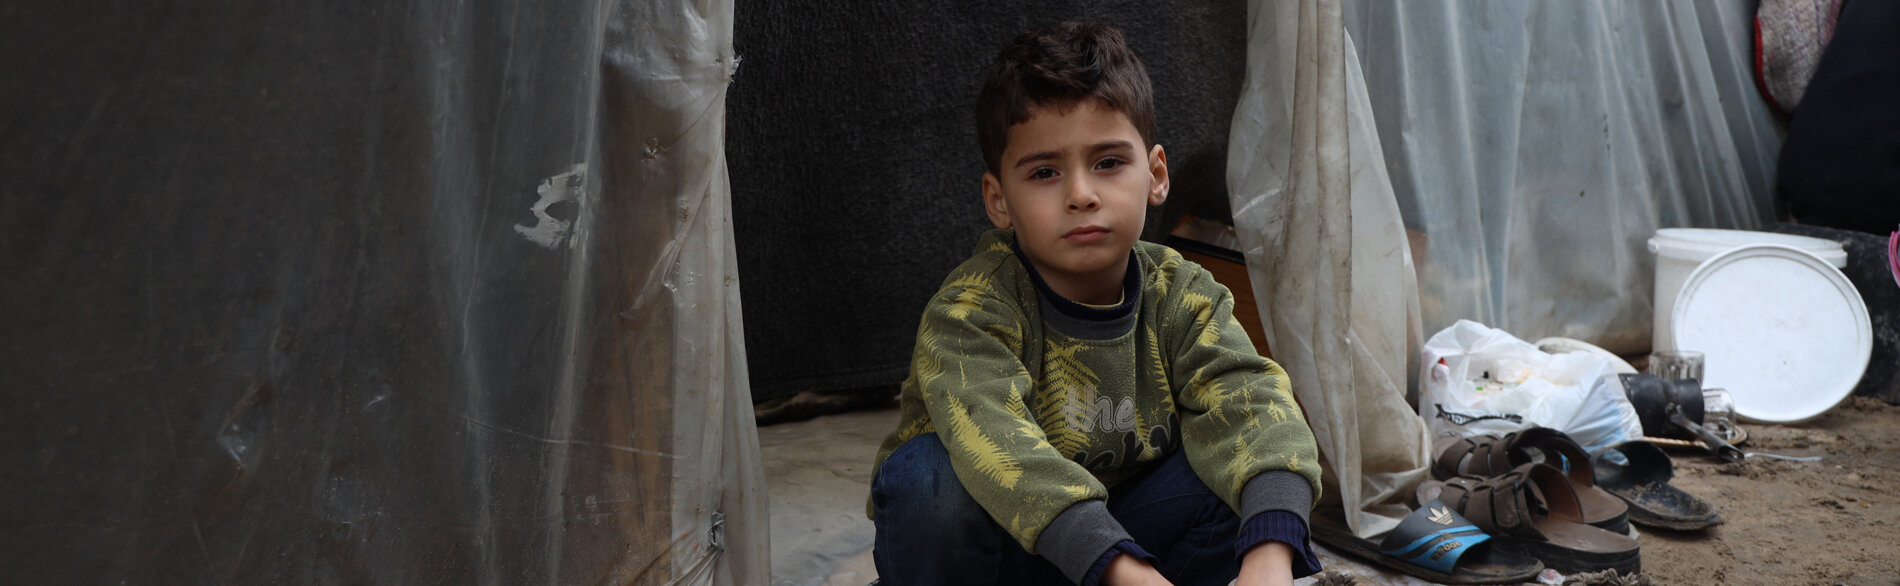 ילד פלסטיני יושב ליד מבנה מאולתר במתקן חינוכי שבו מצאו משפחות עקורות מקלט. צילום: יוניסף / אל-באבא